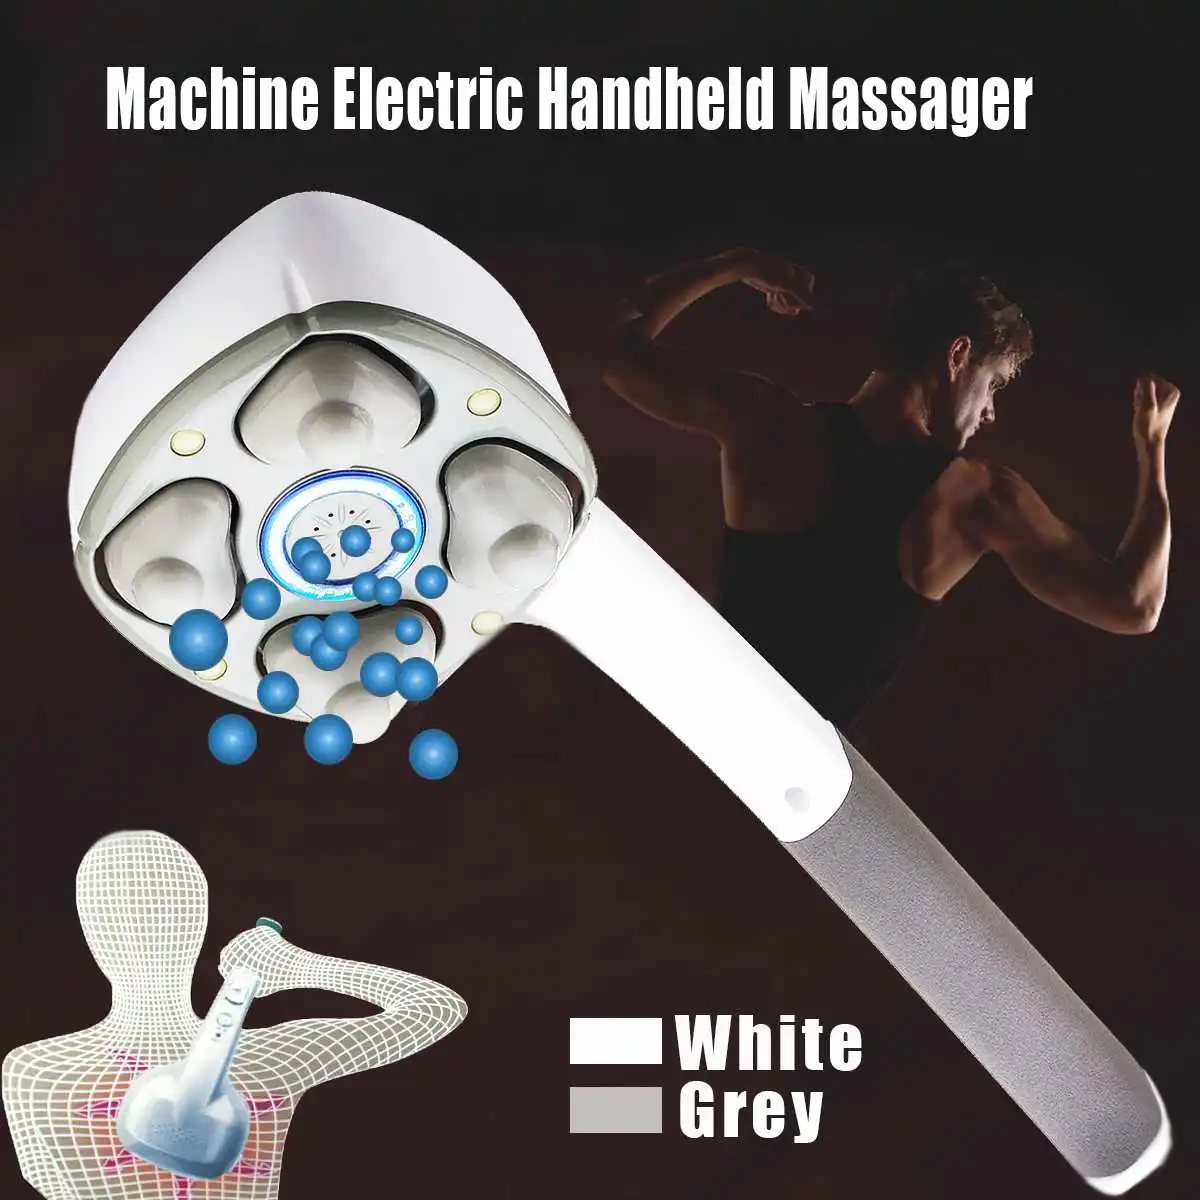 Массажер электрический ручной, вибрационная машинка с четырьмя головками для полного массажа всего тела, шеи и спины, релаксации мышц, глубокого массажа тканей, средство для ухода за здоровьем